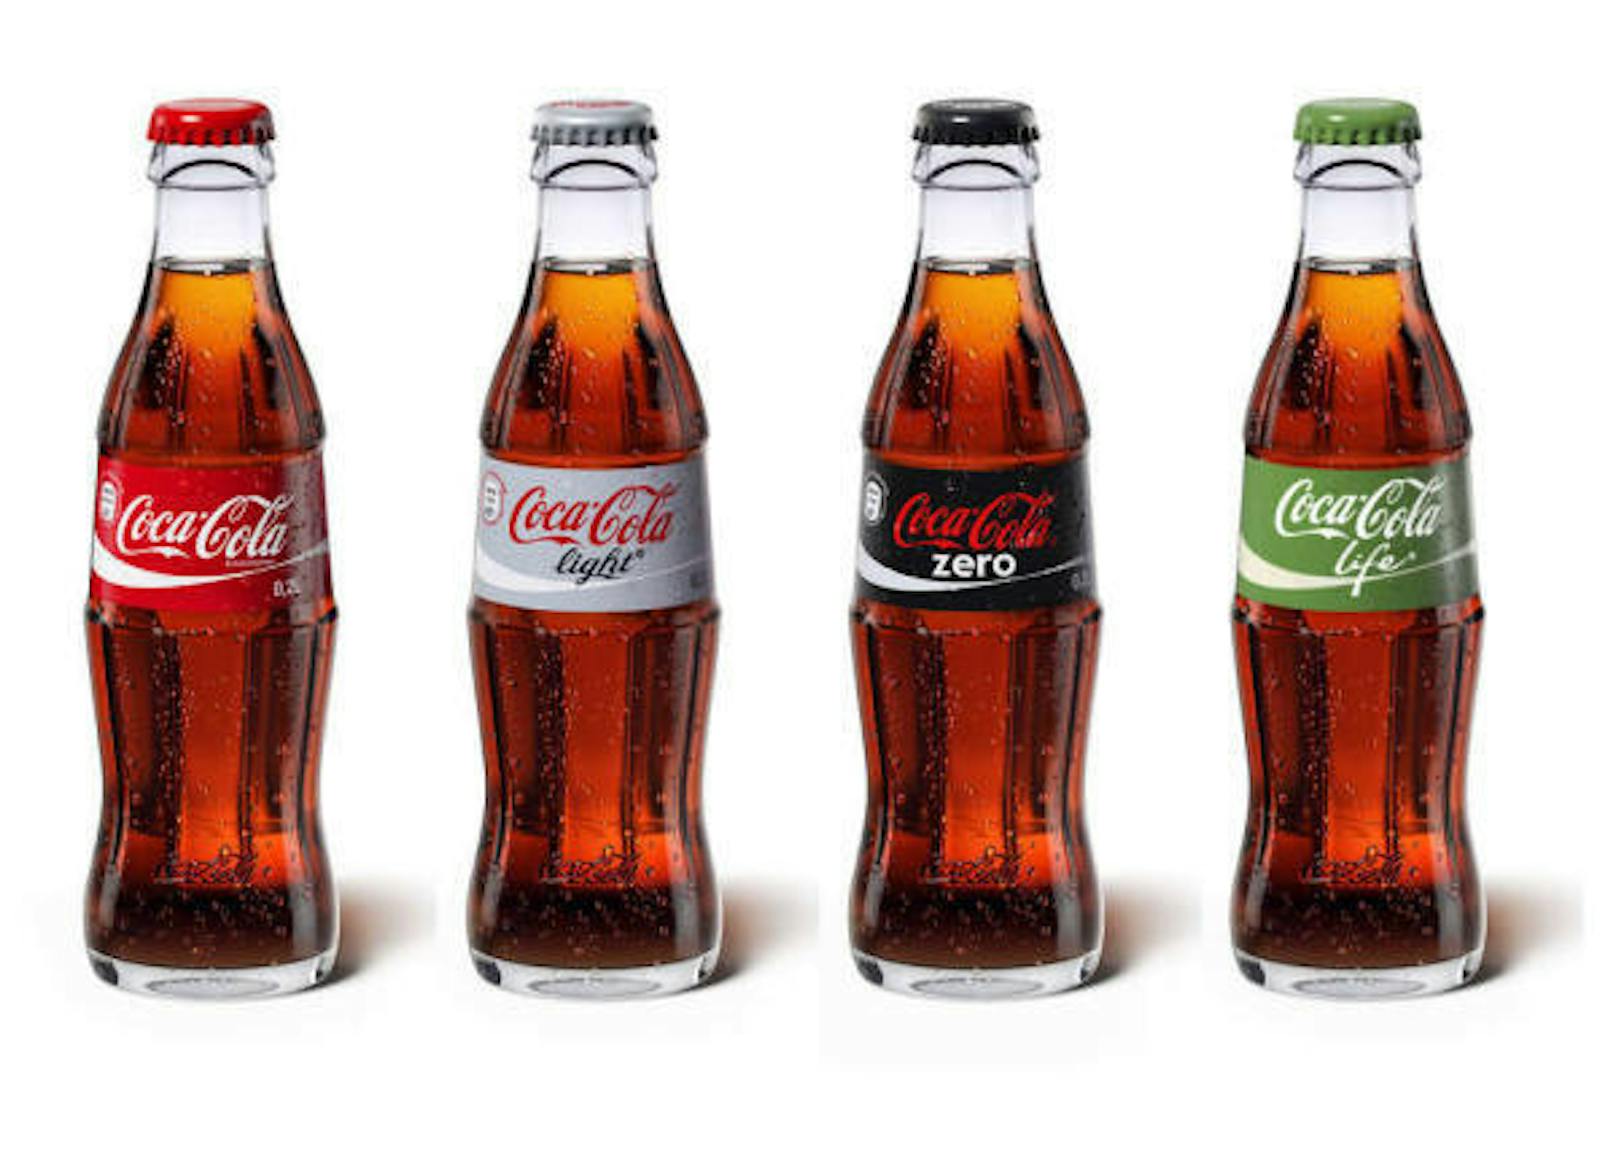 Rot, Grau, Schwarz, Grün: Diese Farben haben die Etiketten auf Coca-Cola-Flaschen. Sie stehen für das klassische Cola, Cola Light, Cola Zero und die Sorte, die mit Stevia gesüßt wird.